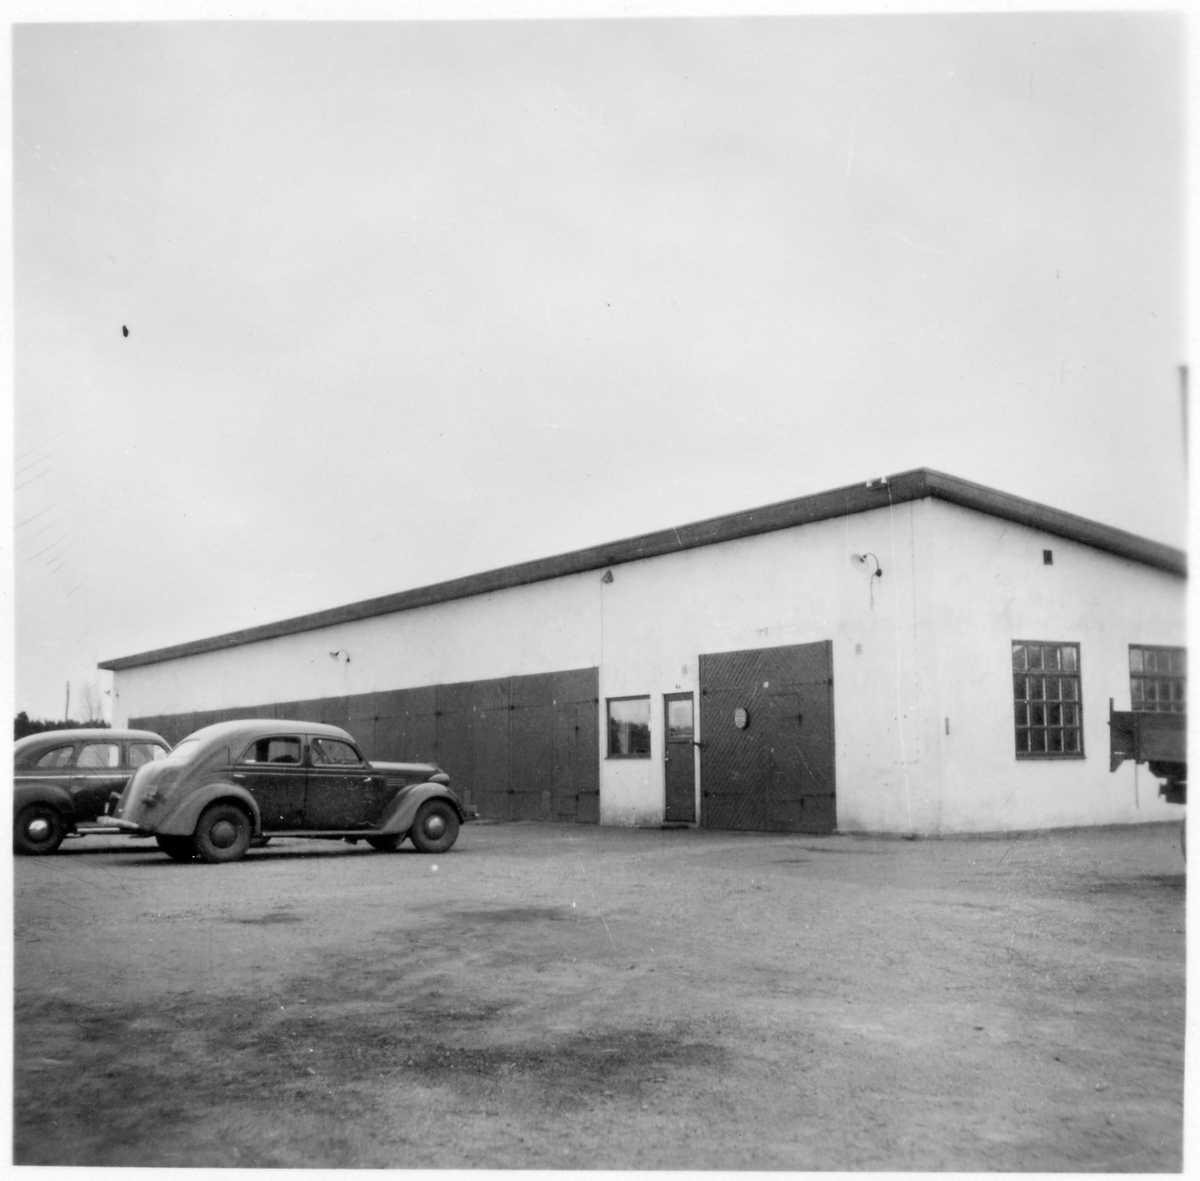 Vägstation H6, Målilla. Garage- och verkstadsbyggnad. Två personbilar på garageplan.